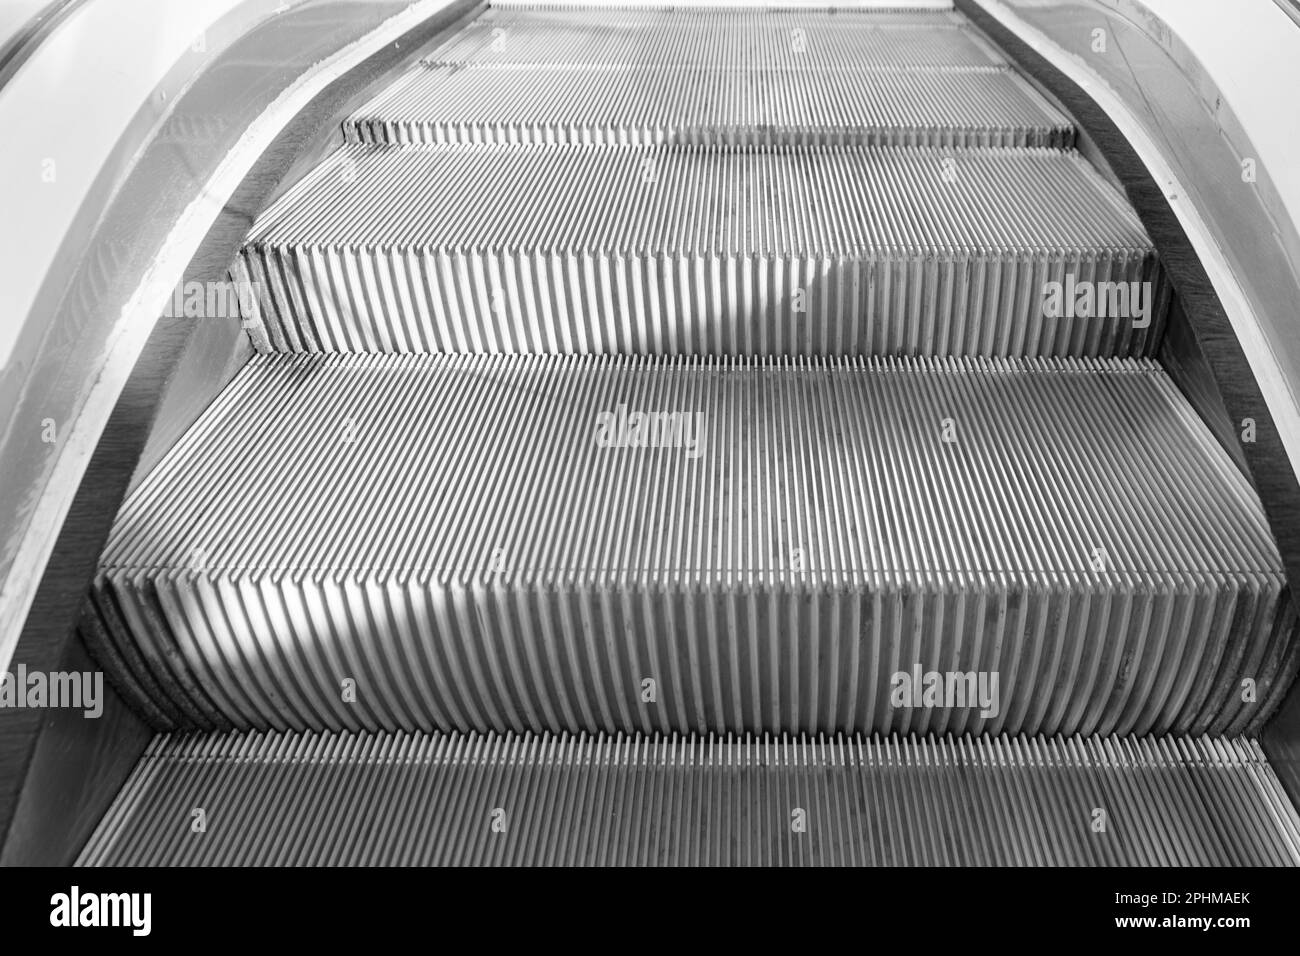 Abstract Escalator, Moving Staircase, Metro Elevator, Electric Stairway, Moving Stairs, Mall Escalator Stock Photo